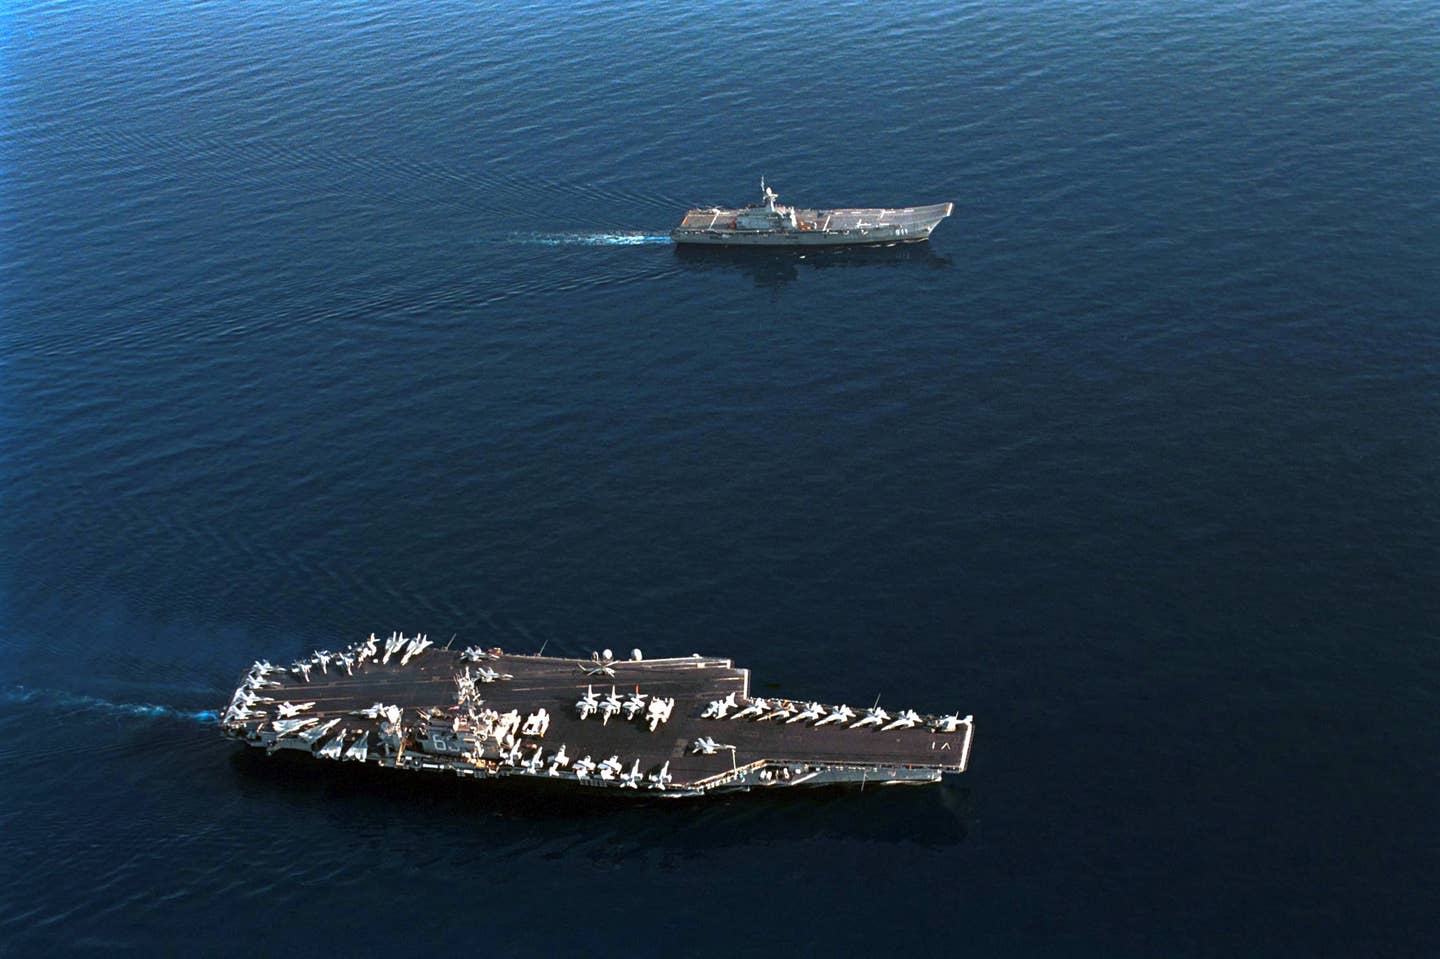 A useful size comparison between the <em>Chakri Naruebet</em> and the aircraft carrier USS <em>Kitty Hawk</em> (CV-63). <em>U.S. Navy</em>